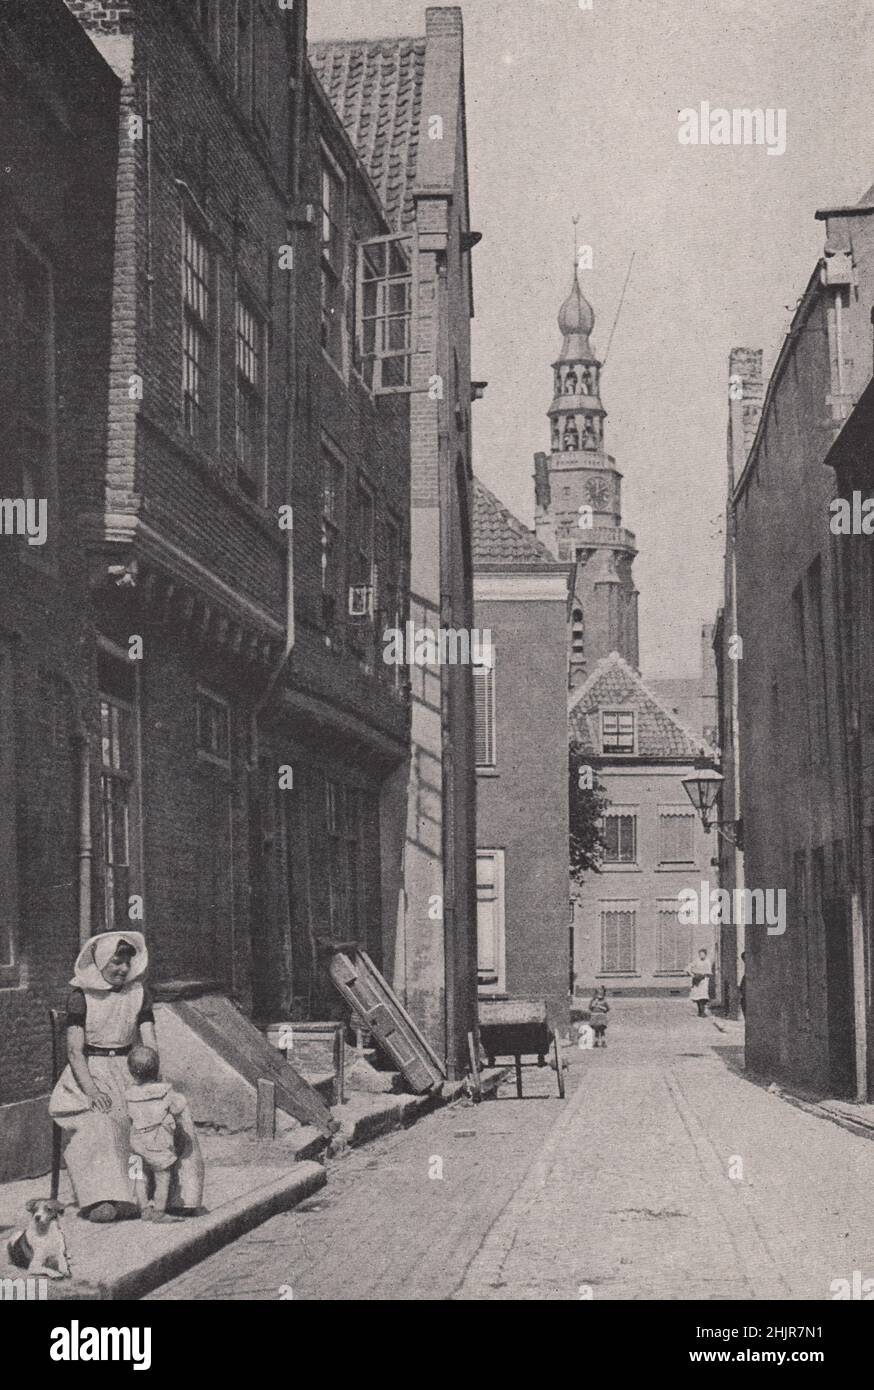 Rue à l'ancienne dans la vieille ville de la chasse d'eau. Pays-Bas. Pays-Bas (1923) Banque D'Images